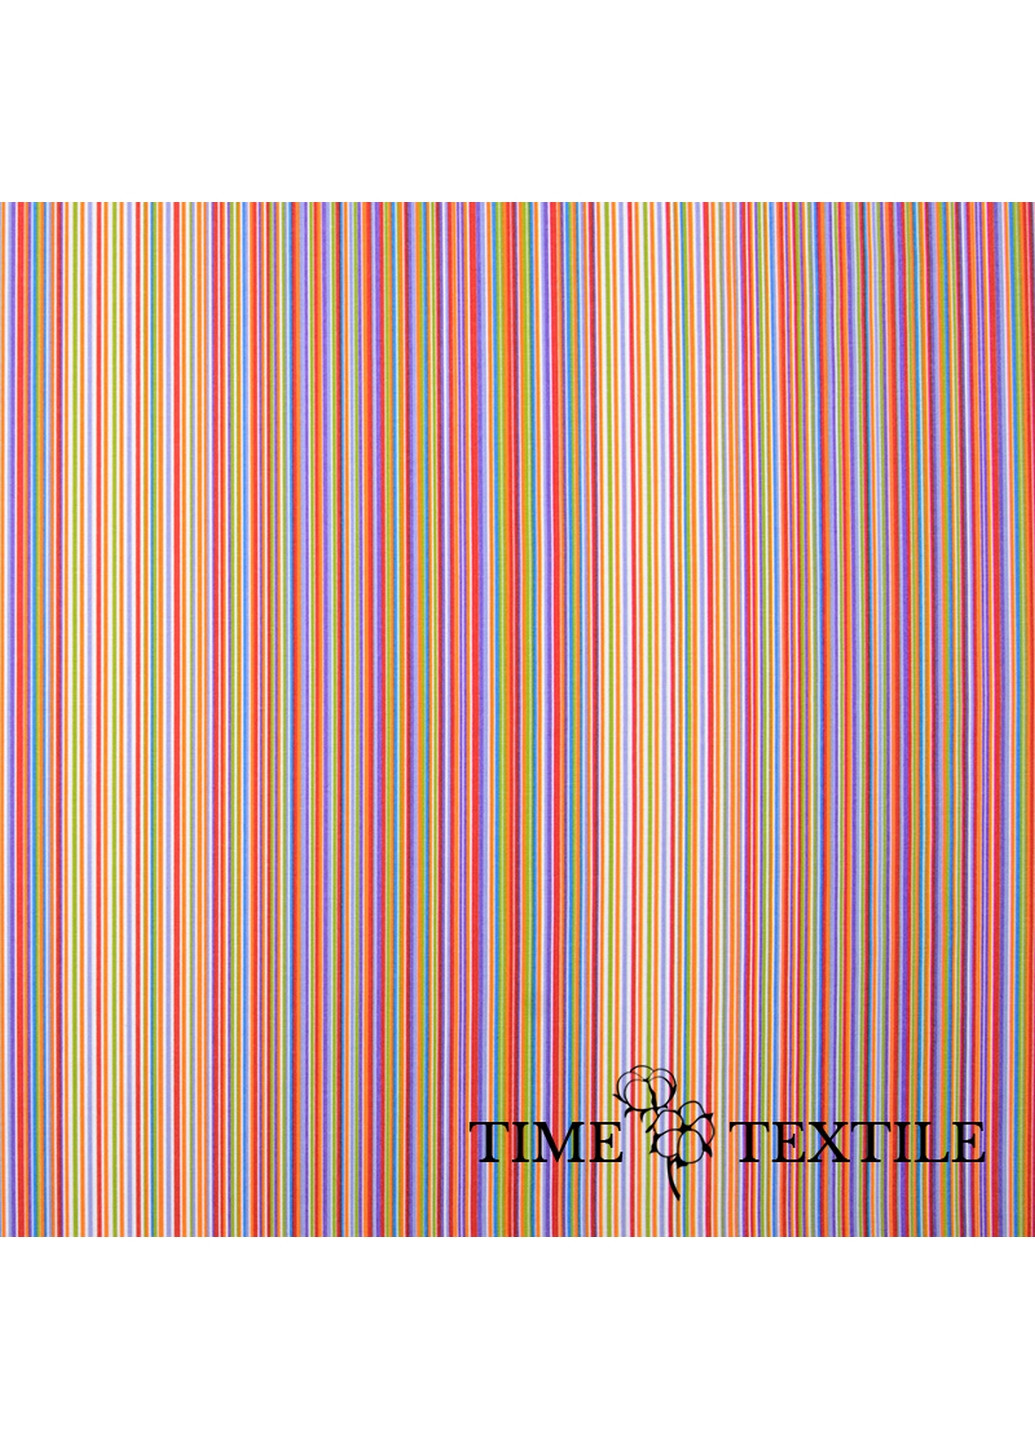 Скатерть влагоотталкивающая 100x140 см Time Textile (262084460)